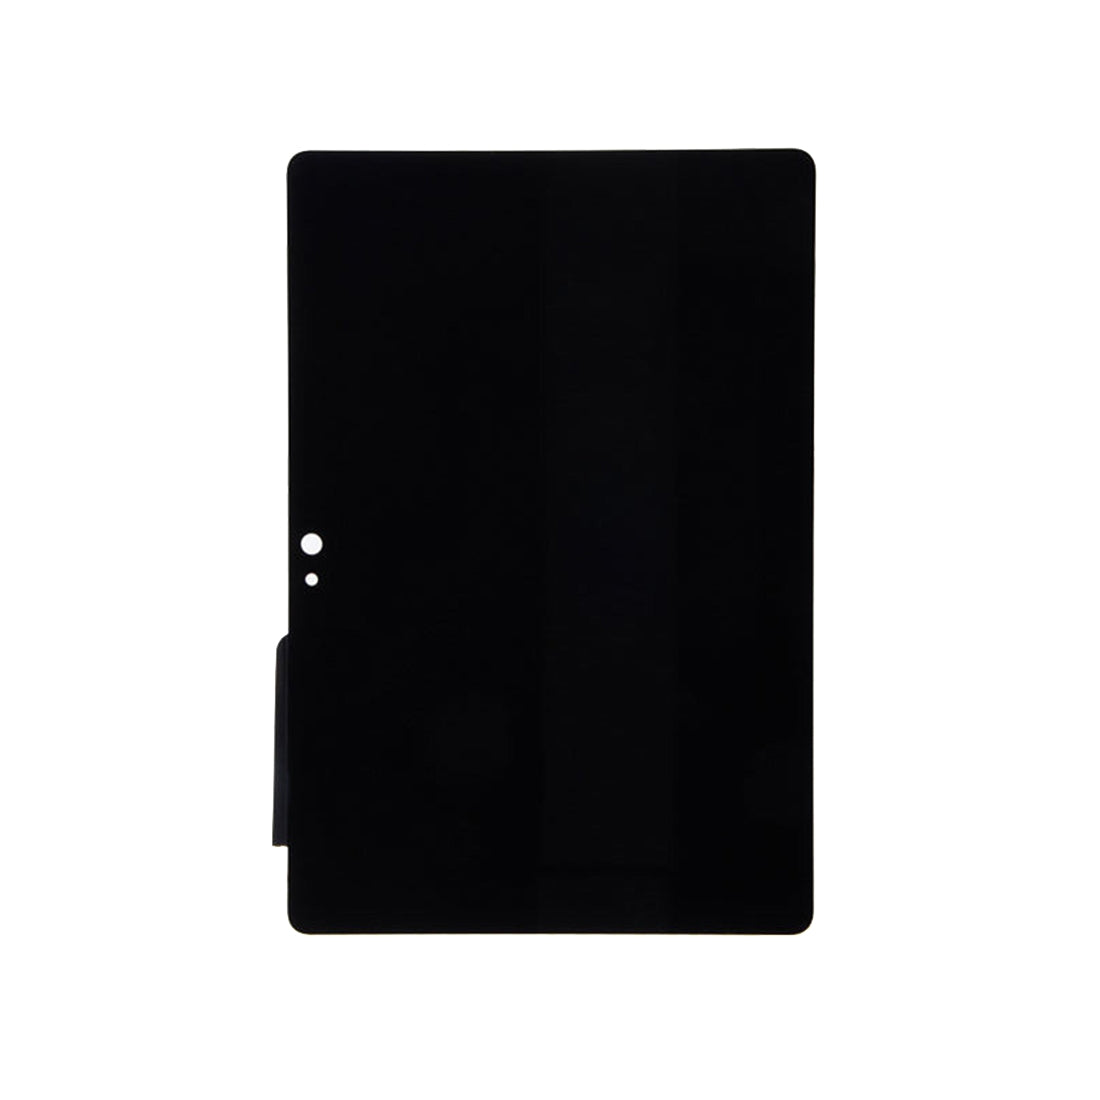 Pantalla LCD + Tactil Digitalizador Amazon Kindle Fire HDX 7 Negro